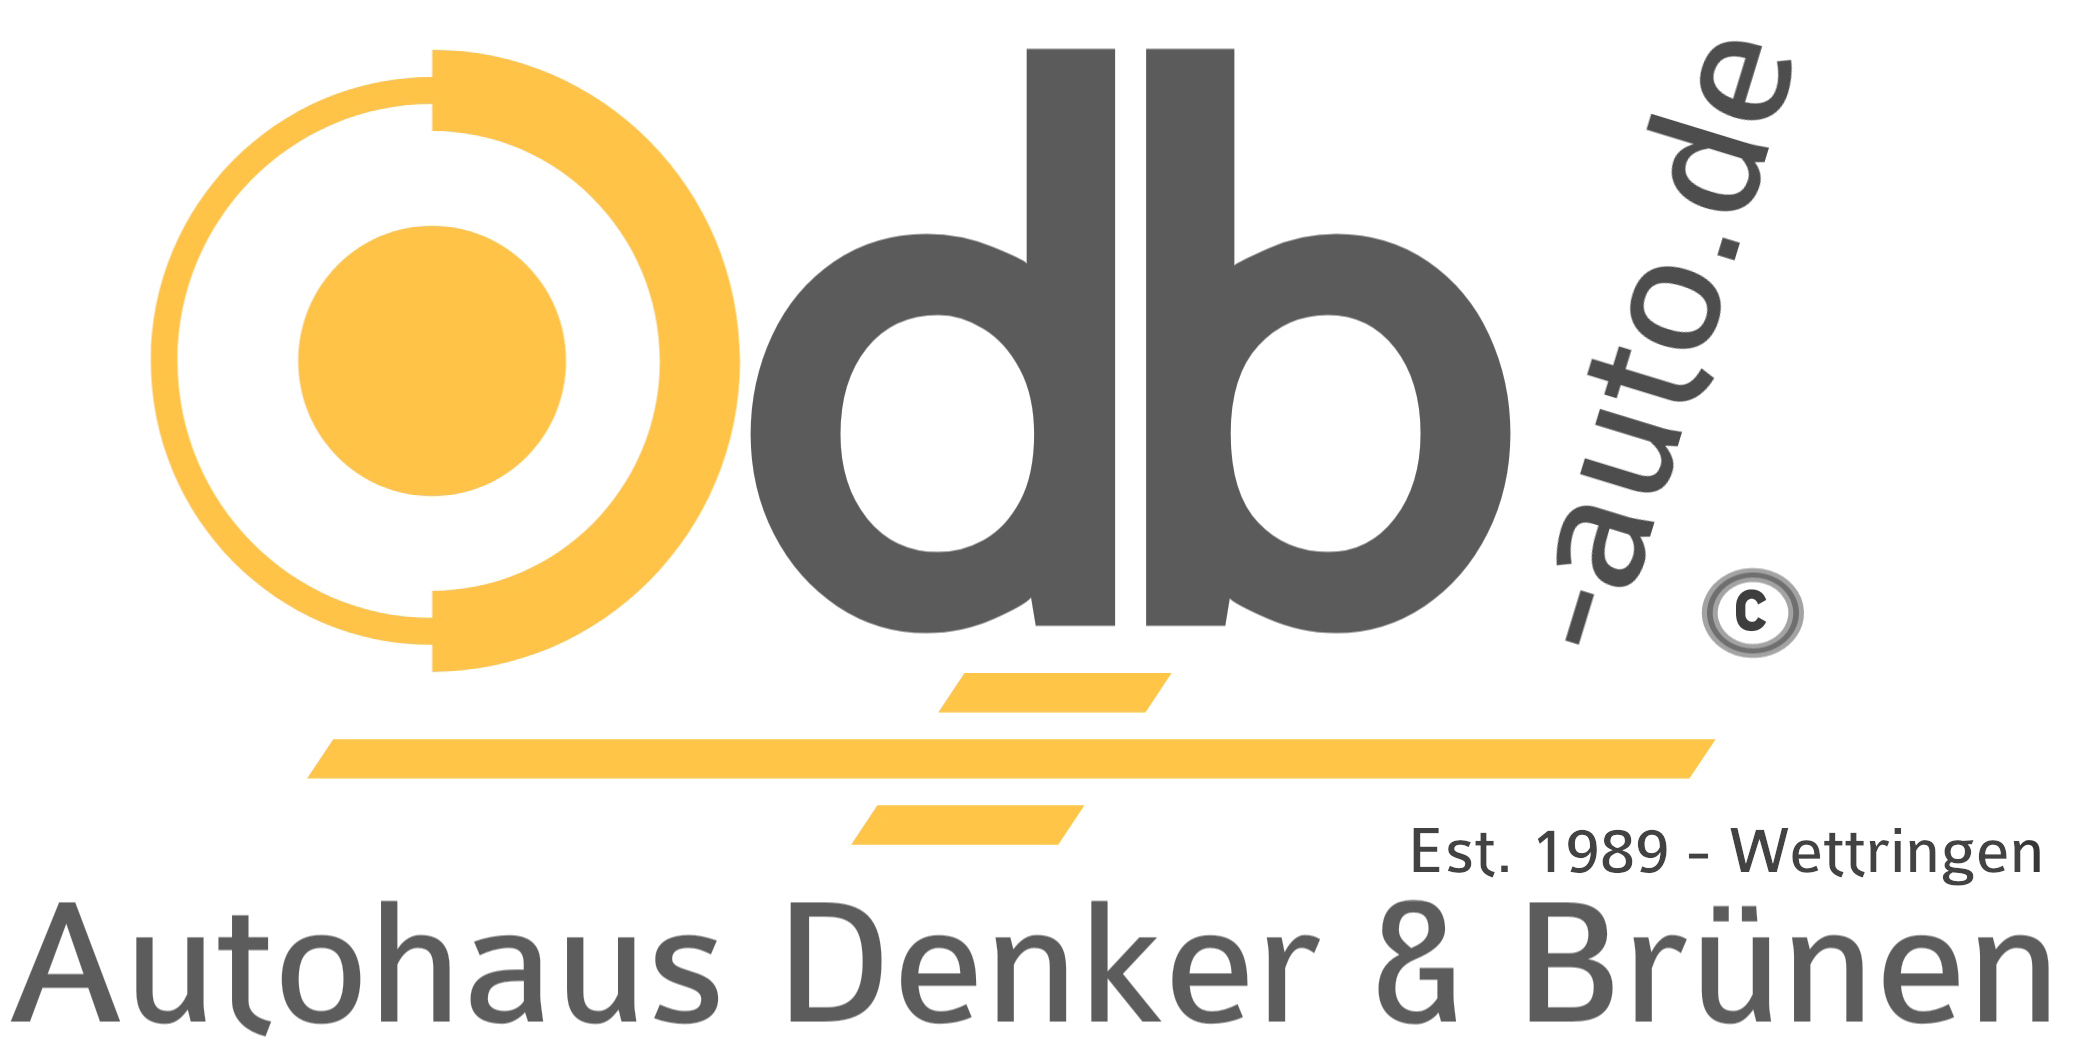 Autohaus Denker & Brünen GbR - KFZ-Werkstatt 1a autoservice und Fahrzeughandel - Freie KFZ-Meisterwerkstatt, Fahrzeughandel, Suzuki Vertragspartner